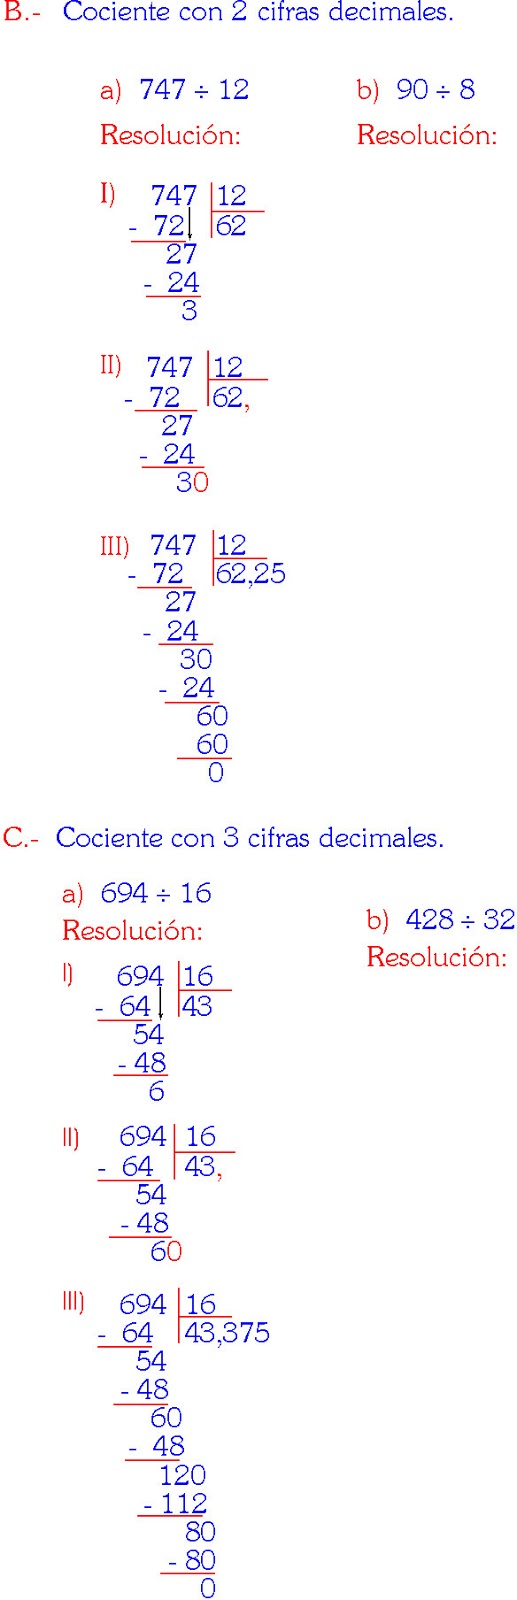 Divisiones De Dos Cifras Con Cociente Decimal Para Imprimir Images 4408